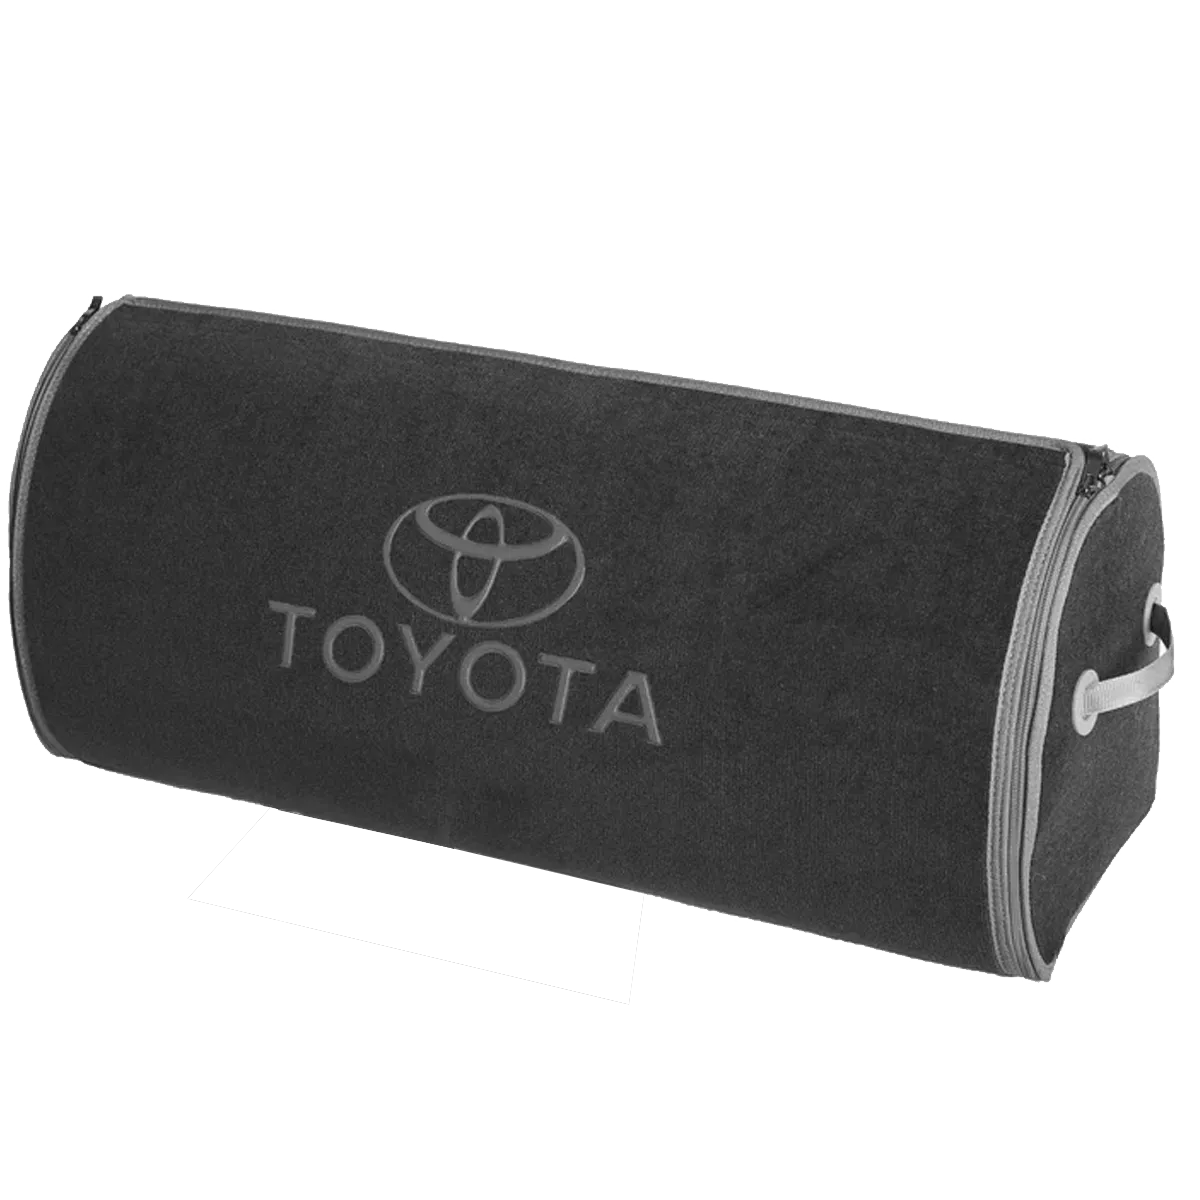 Органайзер в багажник Toyota Big Grey (ST 180181-XXL-Grey)